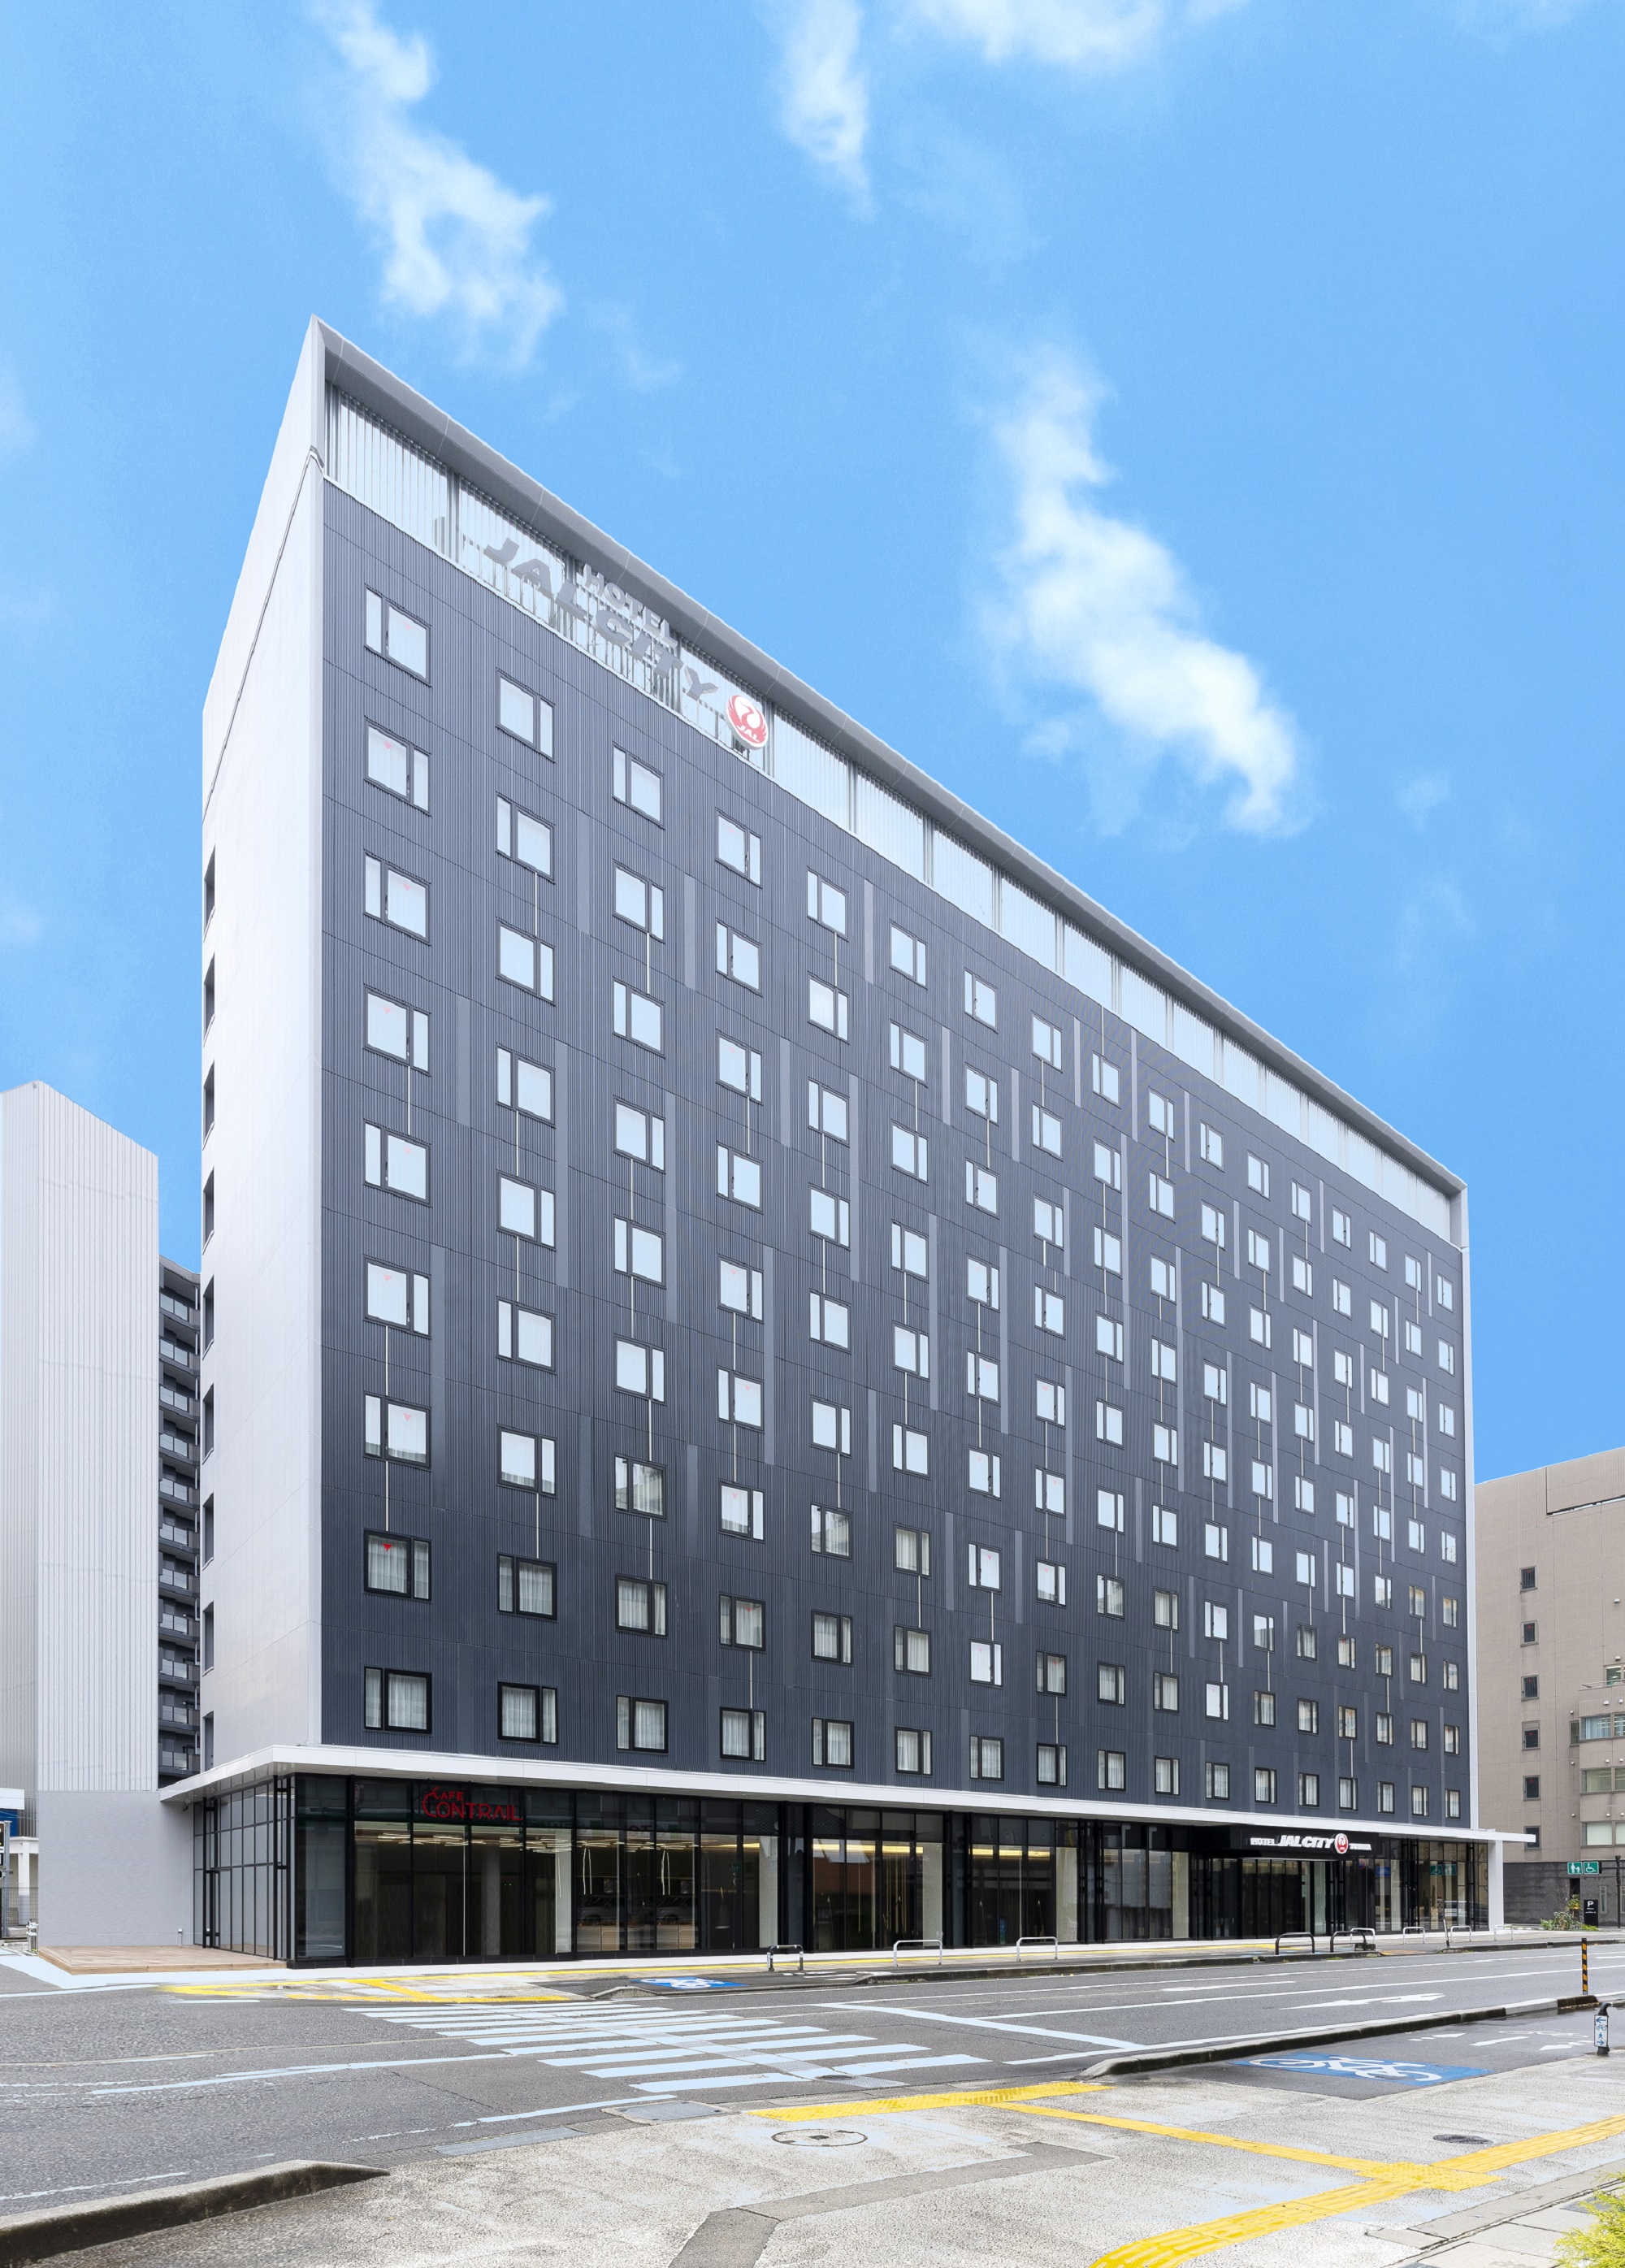 Hotel JAL City Toyama